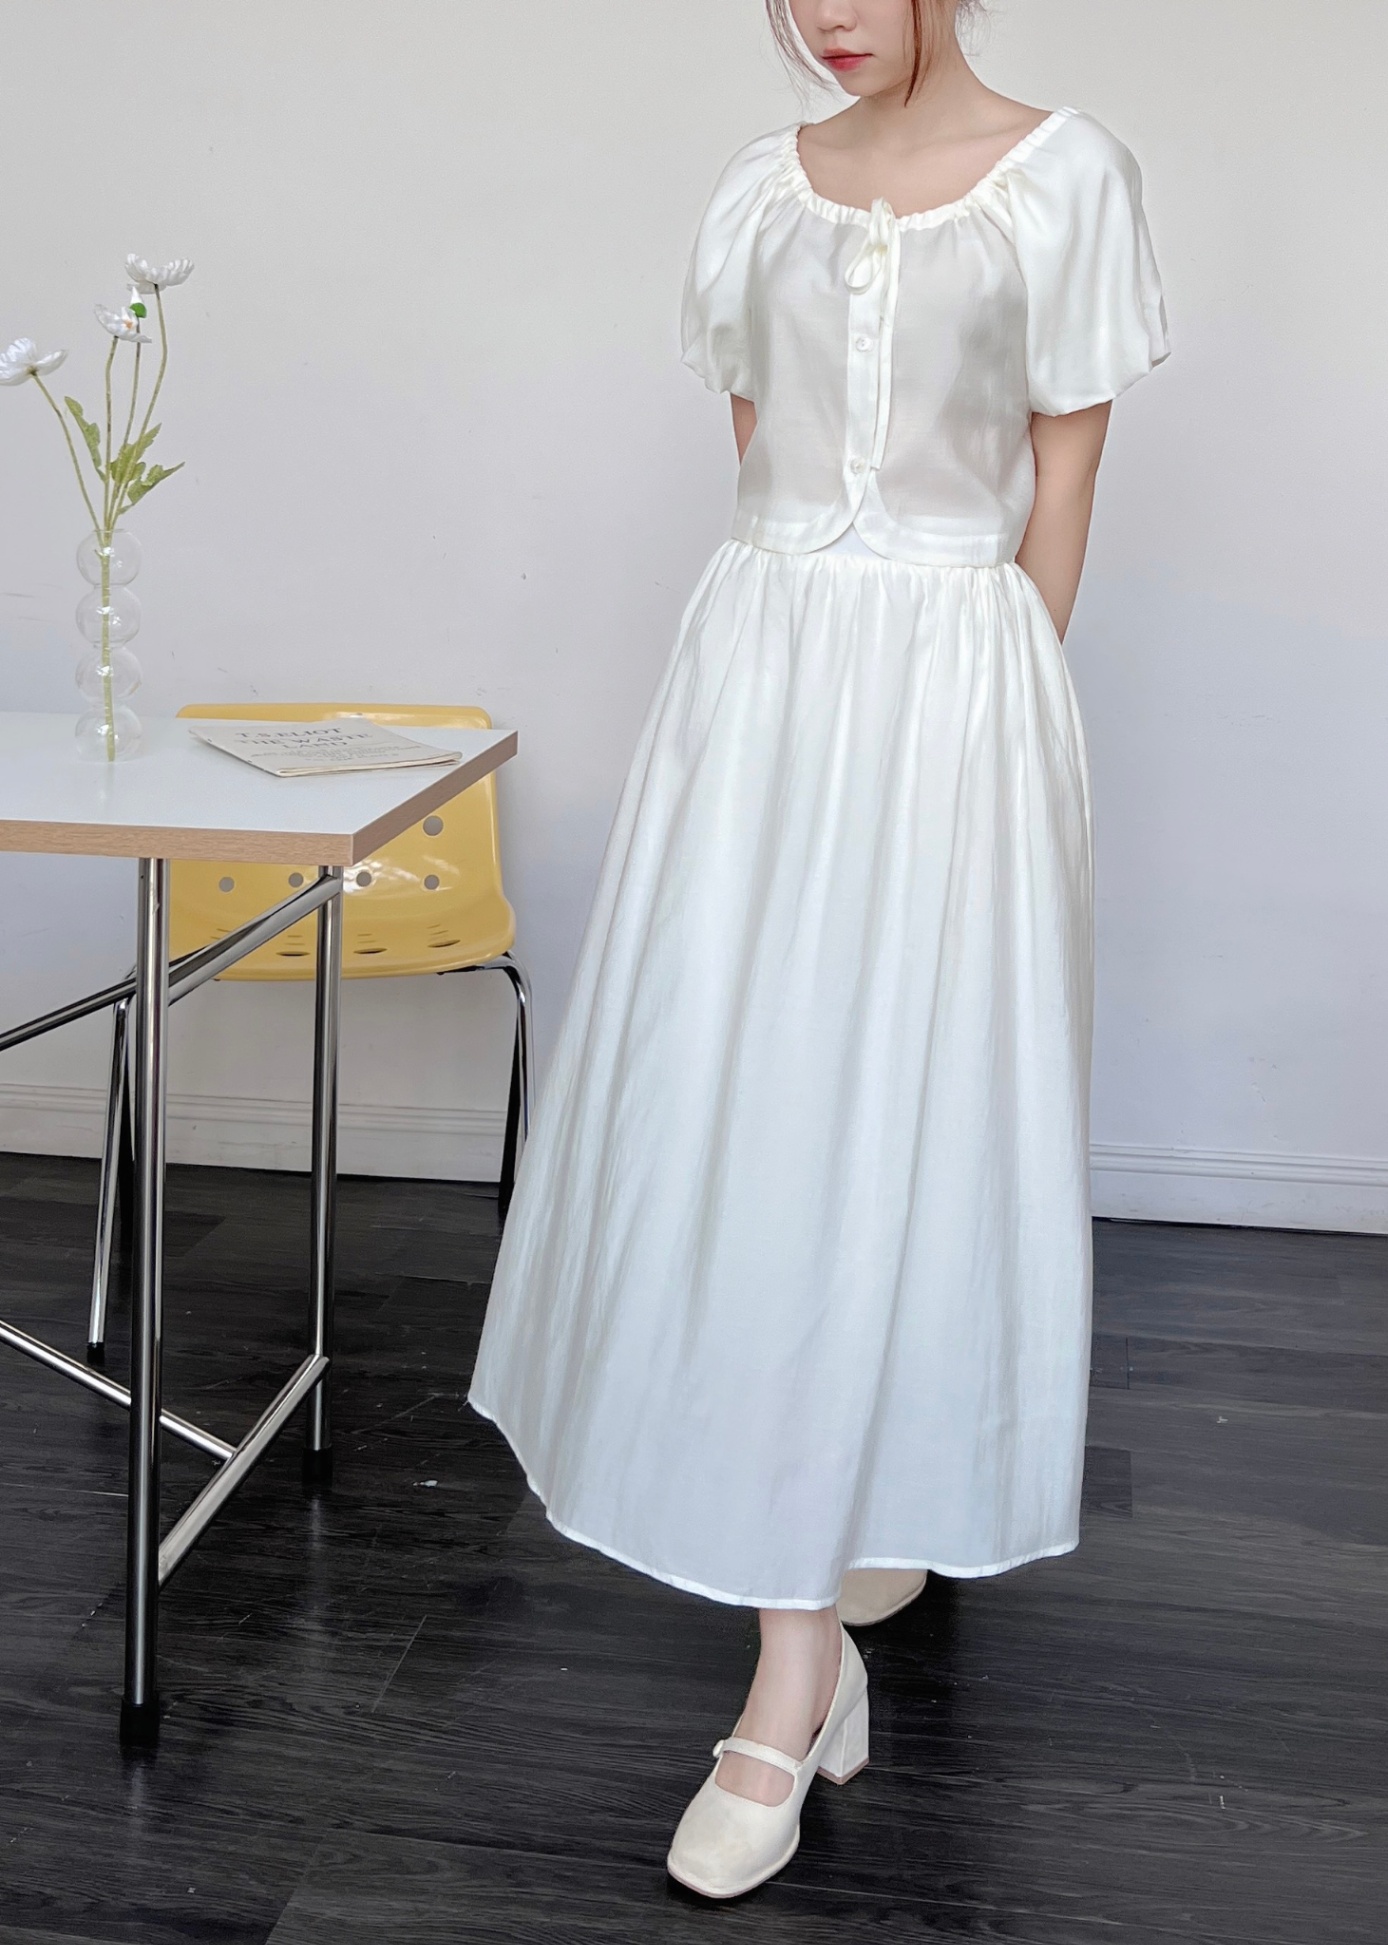 Chân váy trắng, váy trắng dài, nhẹ nhàng bồng bềnh và nữ tính | Lazada.vn